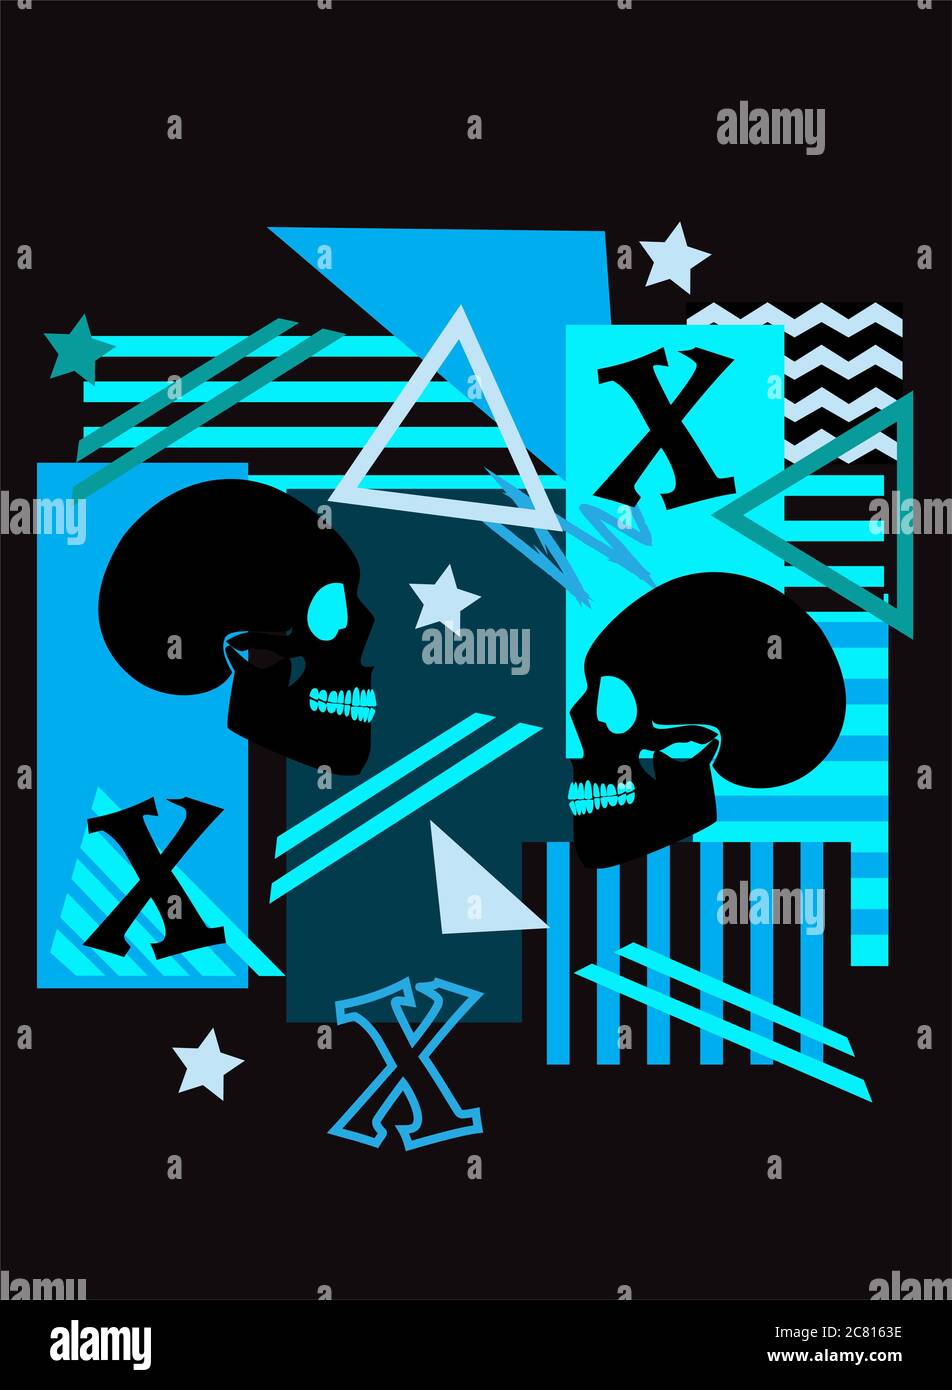 Totenkopf Graffiti Pop Art blau Hintergrund mit Streifen, Dreieck, Sterne und Buchstabe X. Stockfoto